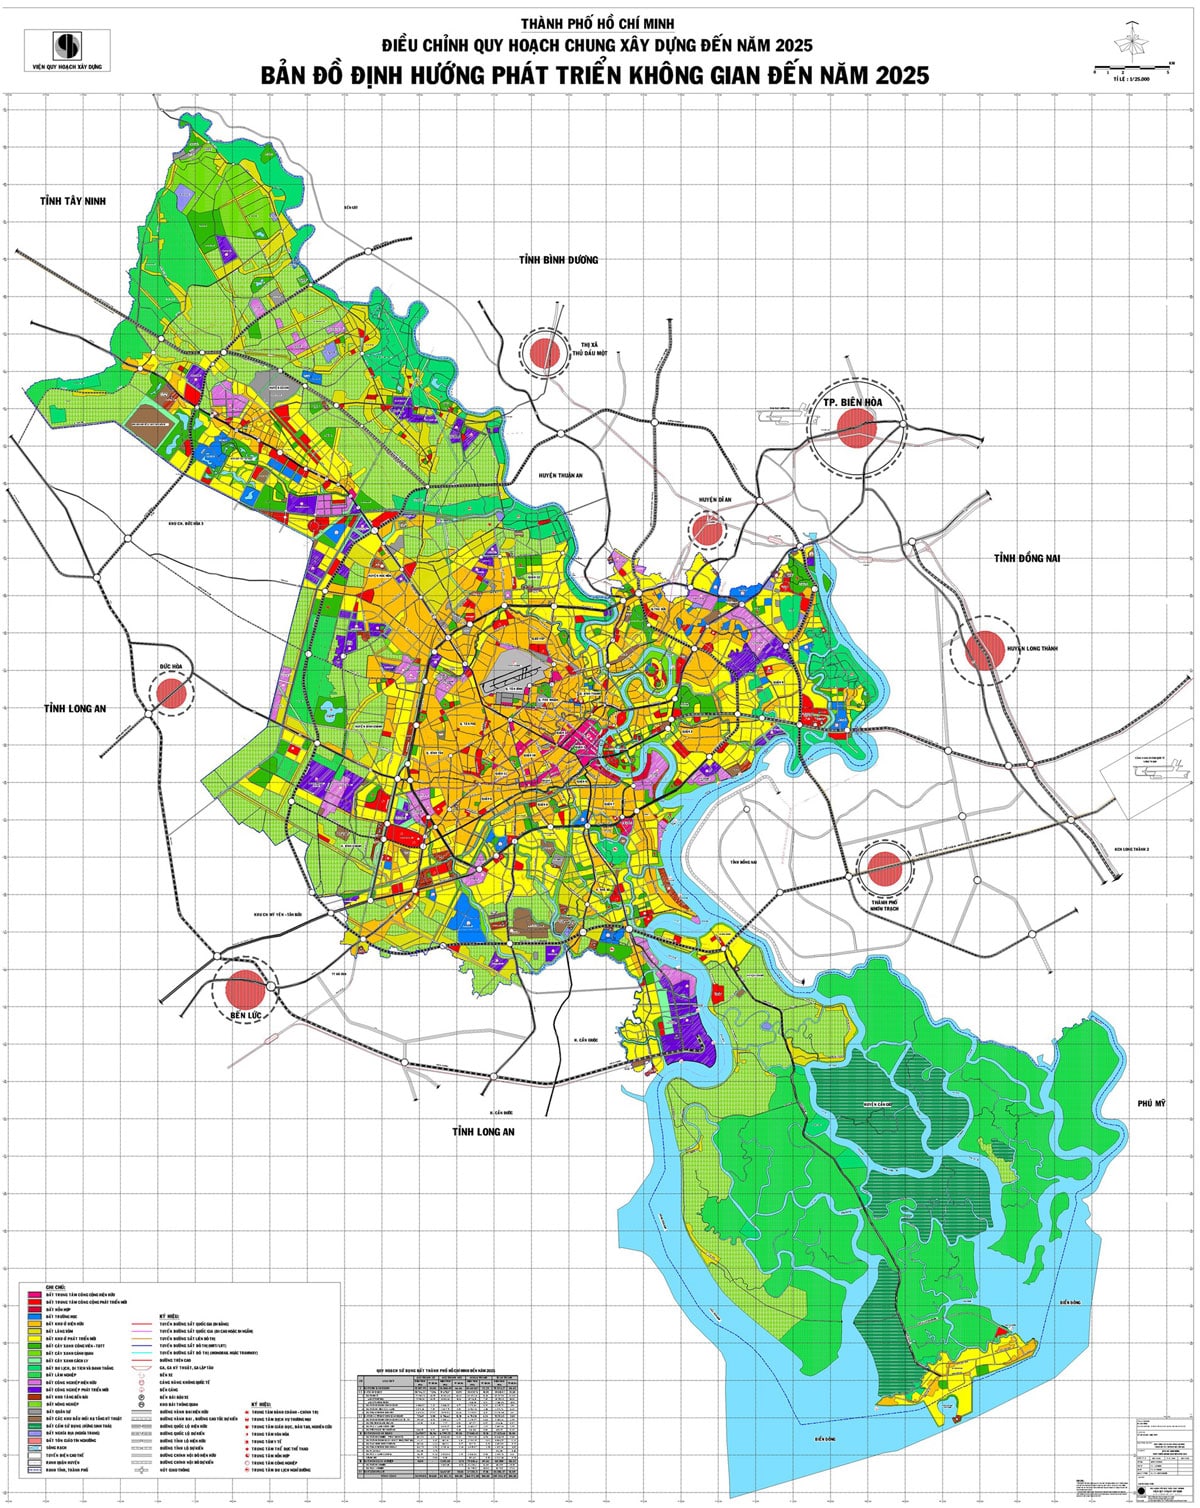 Thành phố Hồ Chí Minh Điều chỉnh quy hoạch chung xây dựng đến năm 2025. Ban đồ định hướng phát triển không gian đến năm 2025 - BẢN ĐỒ HÀNH CHÍNH TPHCM VÀ 24 QUẬN HUYỆN MỚI NHẤT 2024